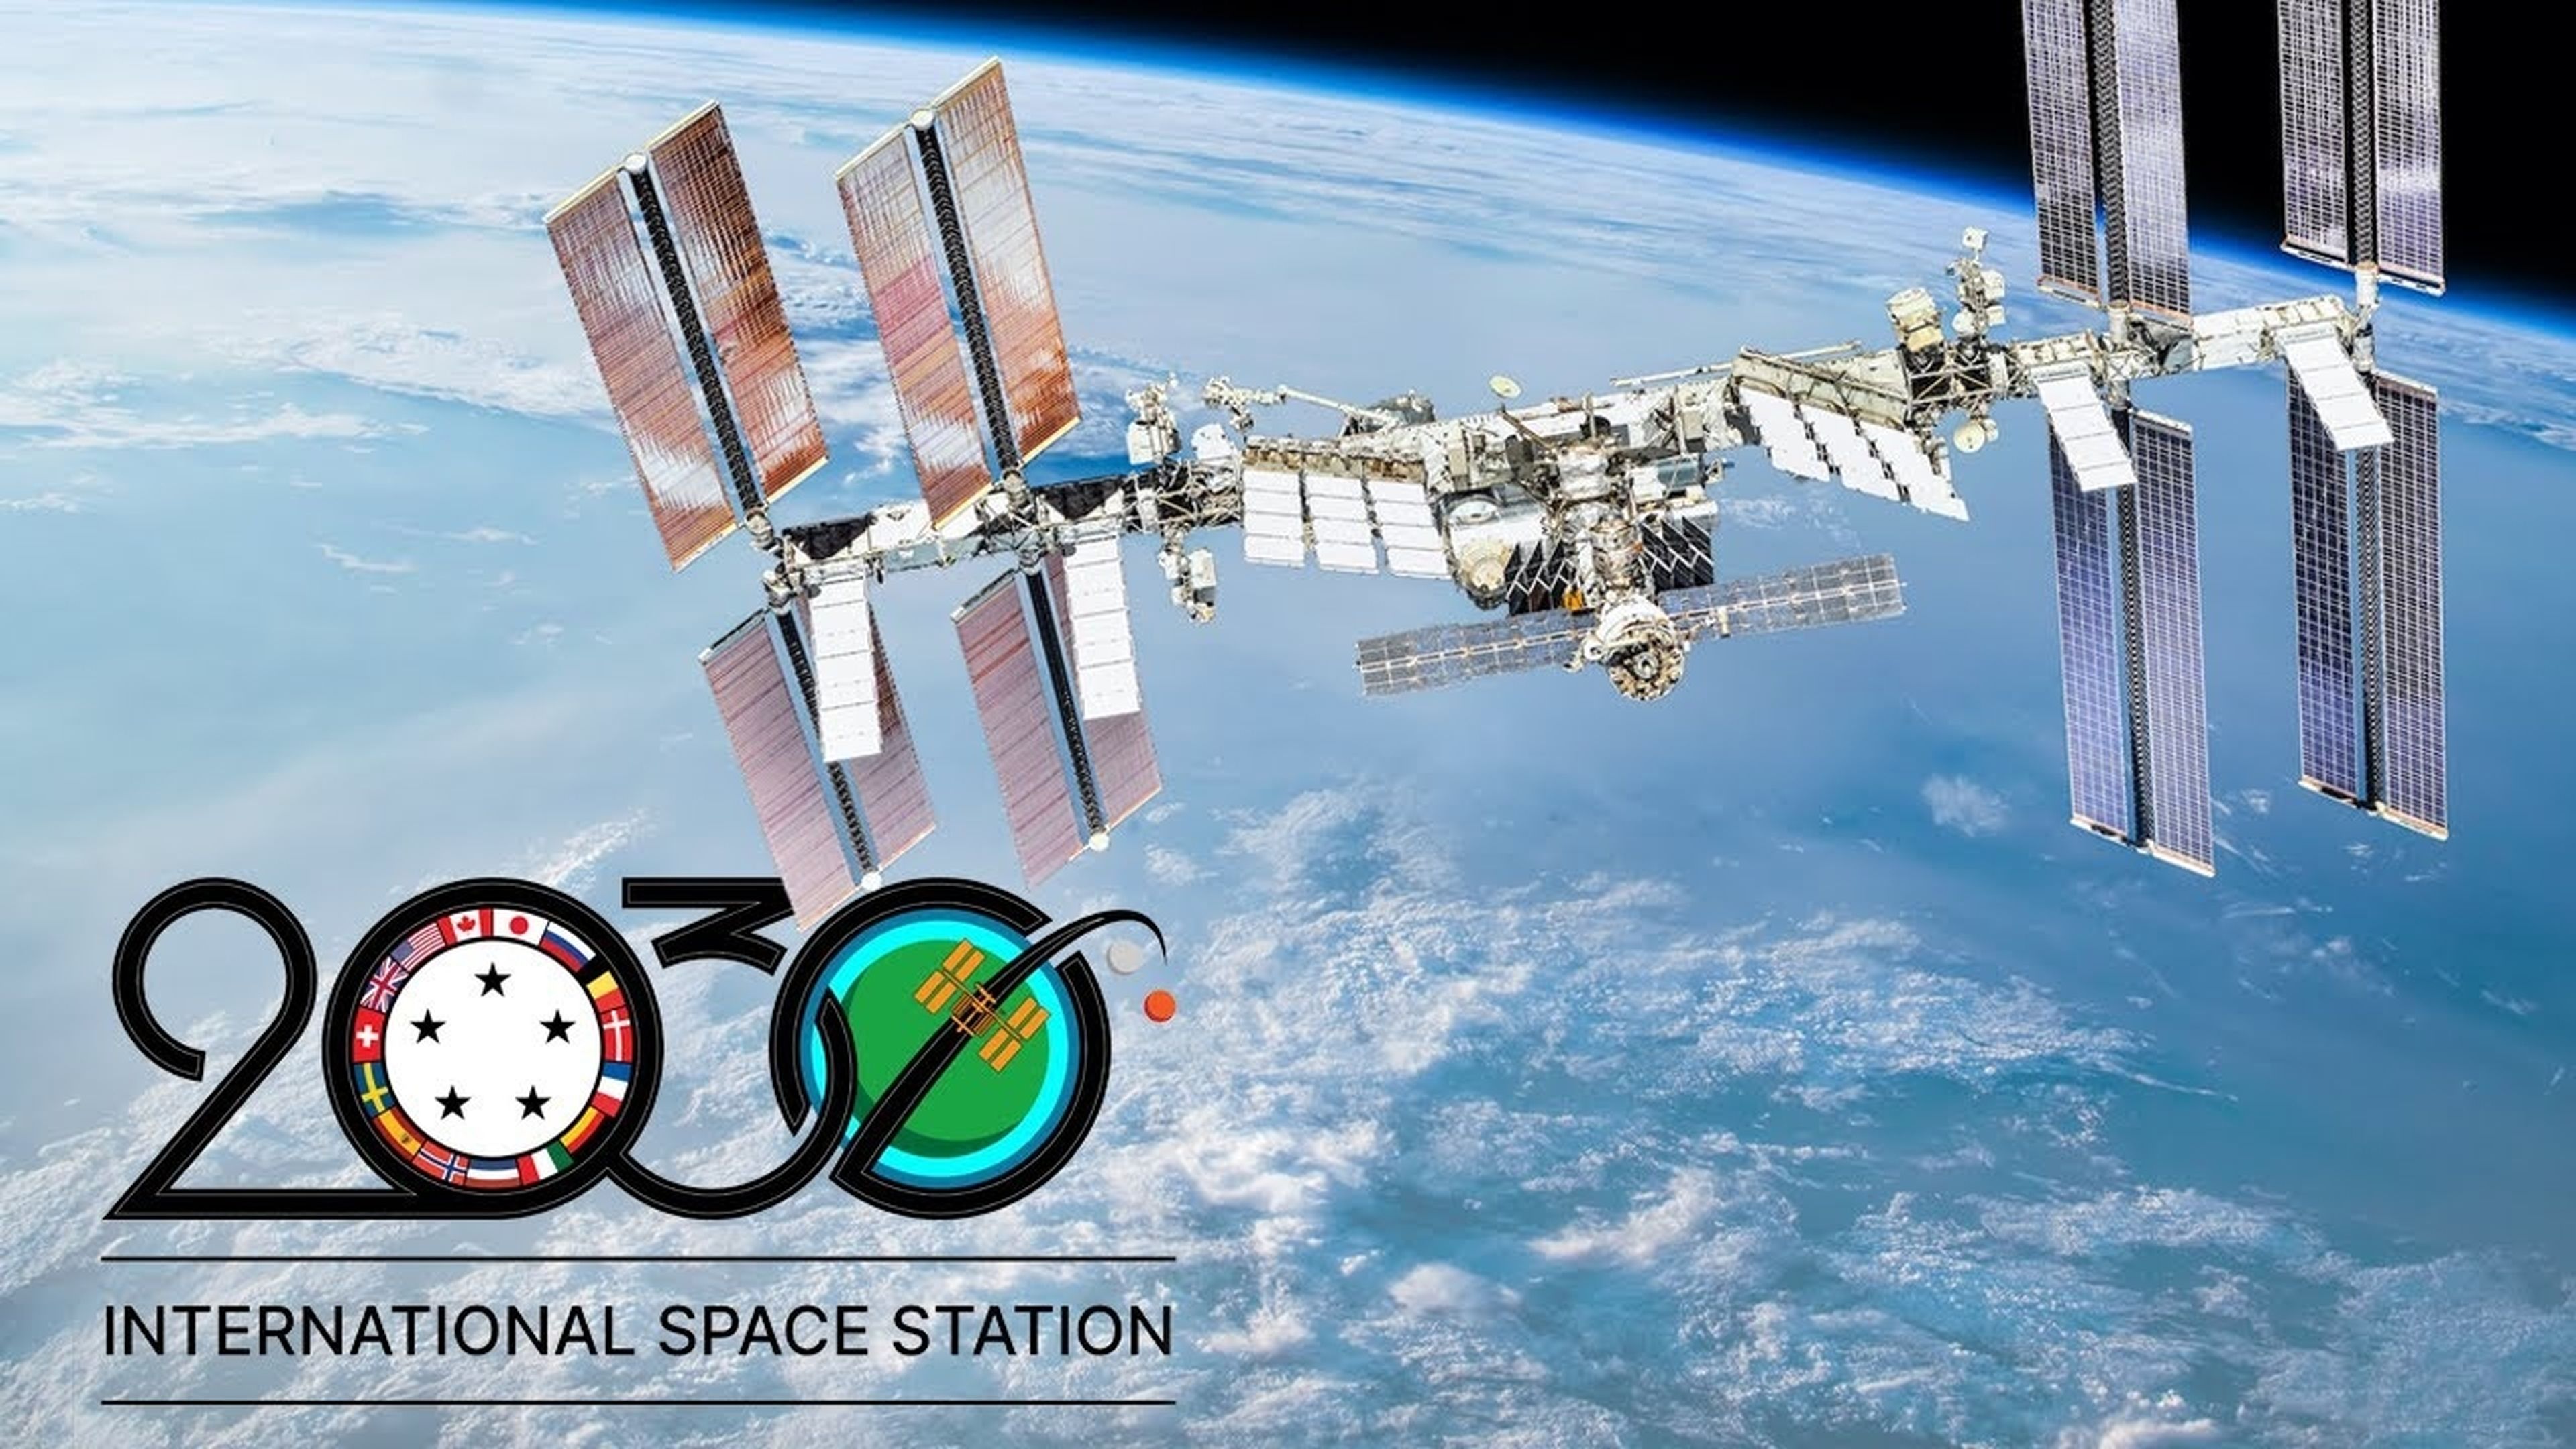 La NASA tiene pensado estrellar la Estación Espacial Internacional en el Océano Pacífico, en el año 2031